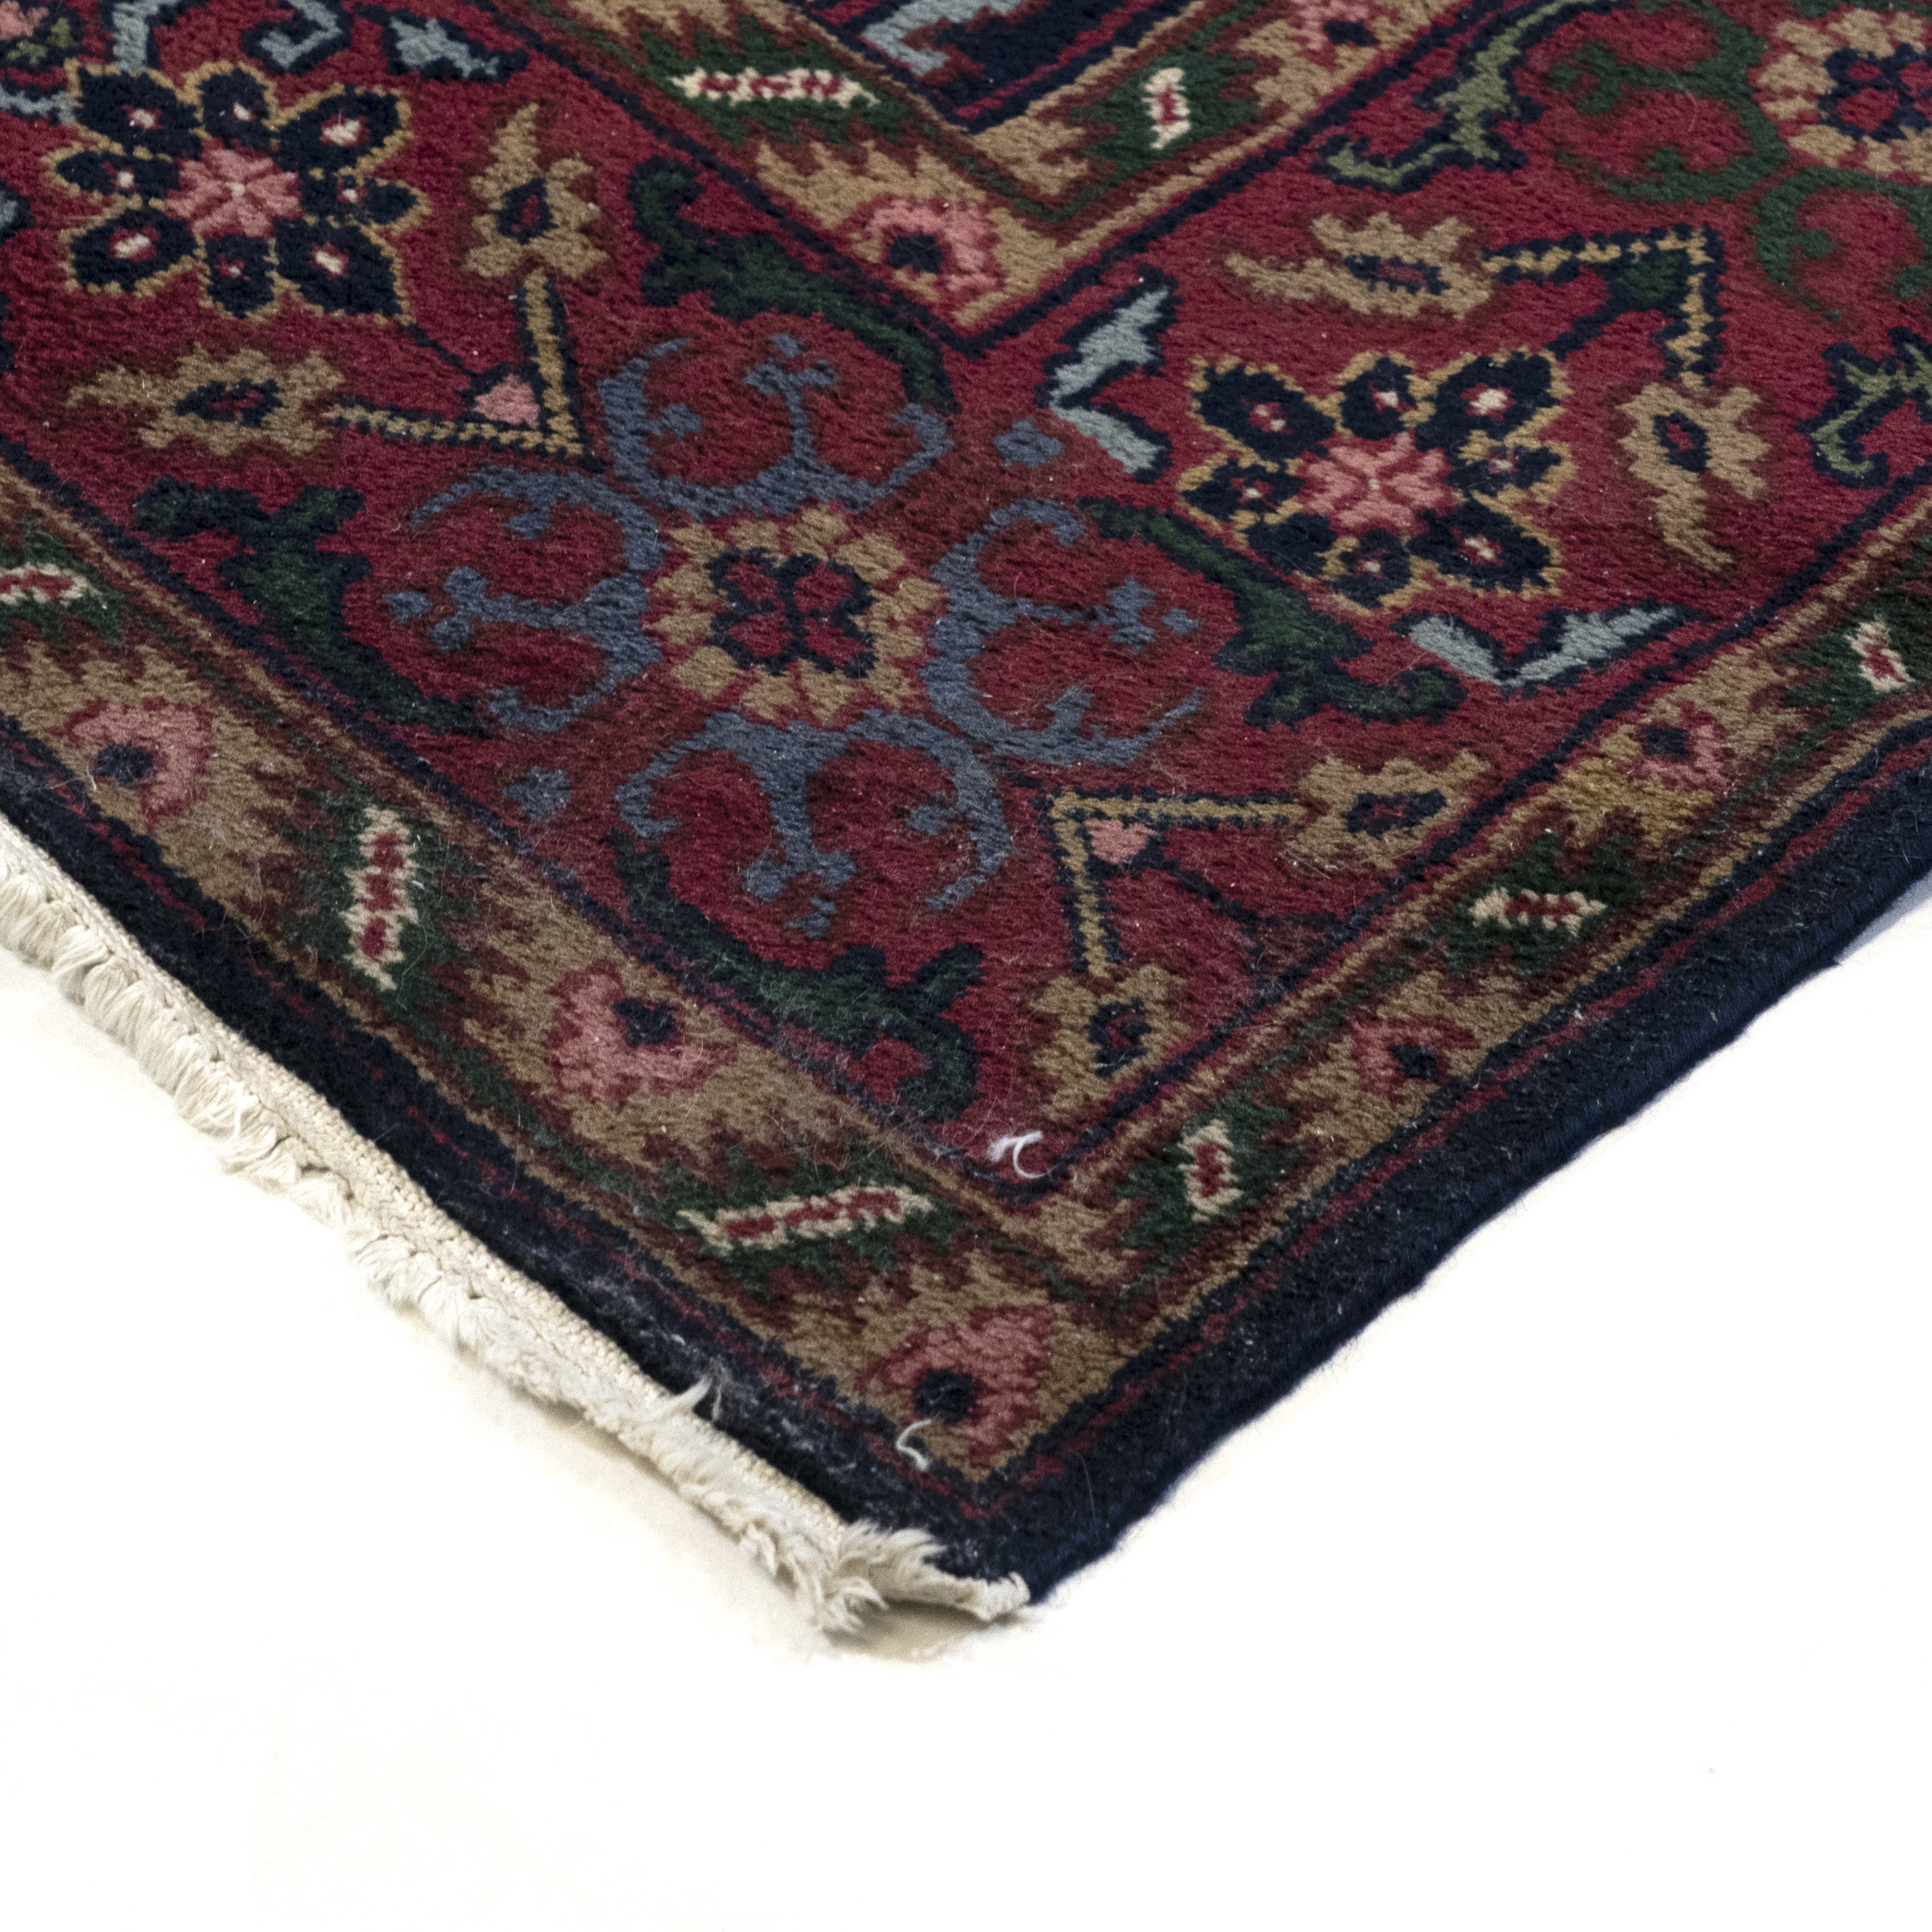 Indian Sarouk Carpet, c.1970